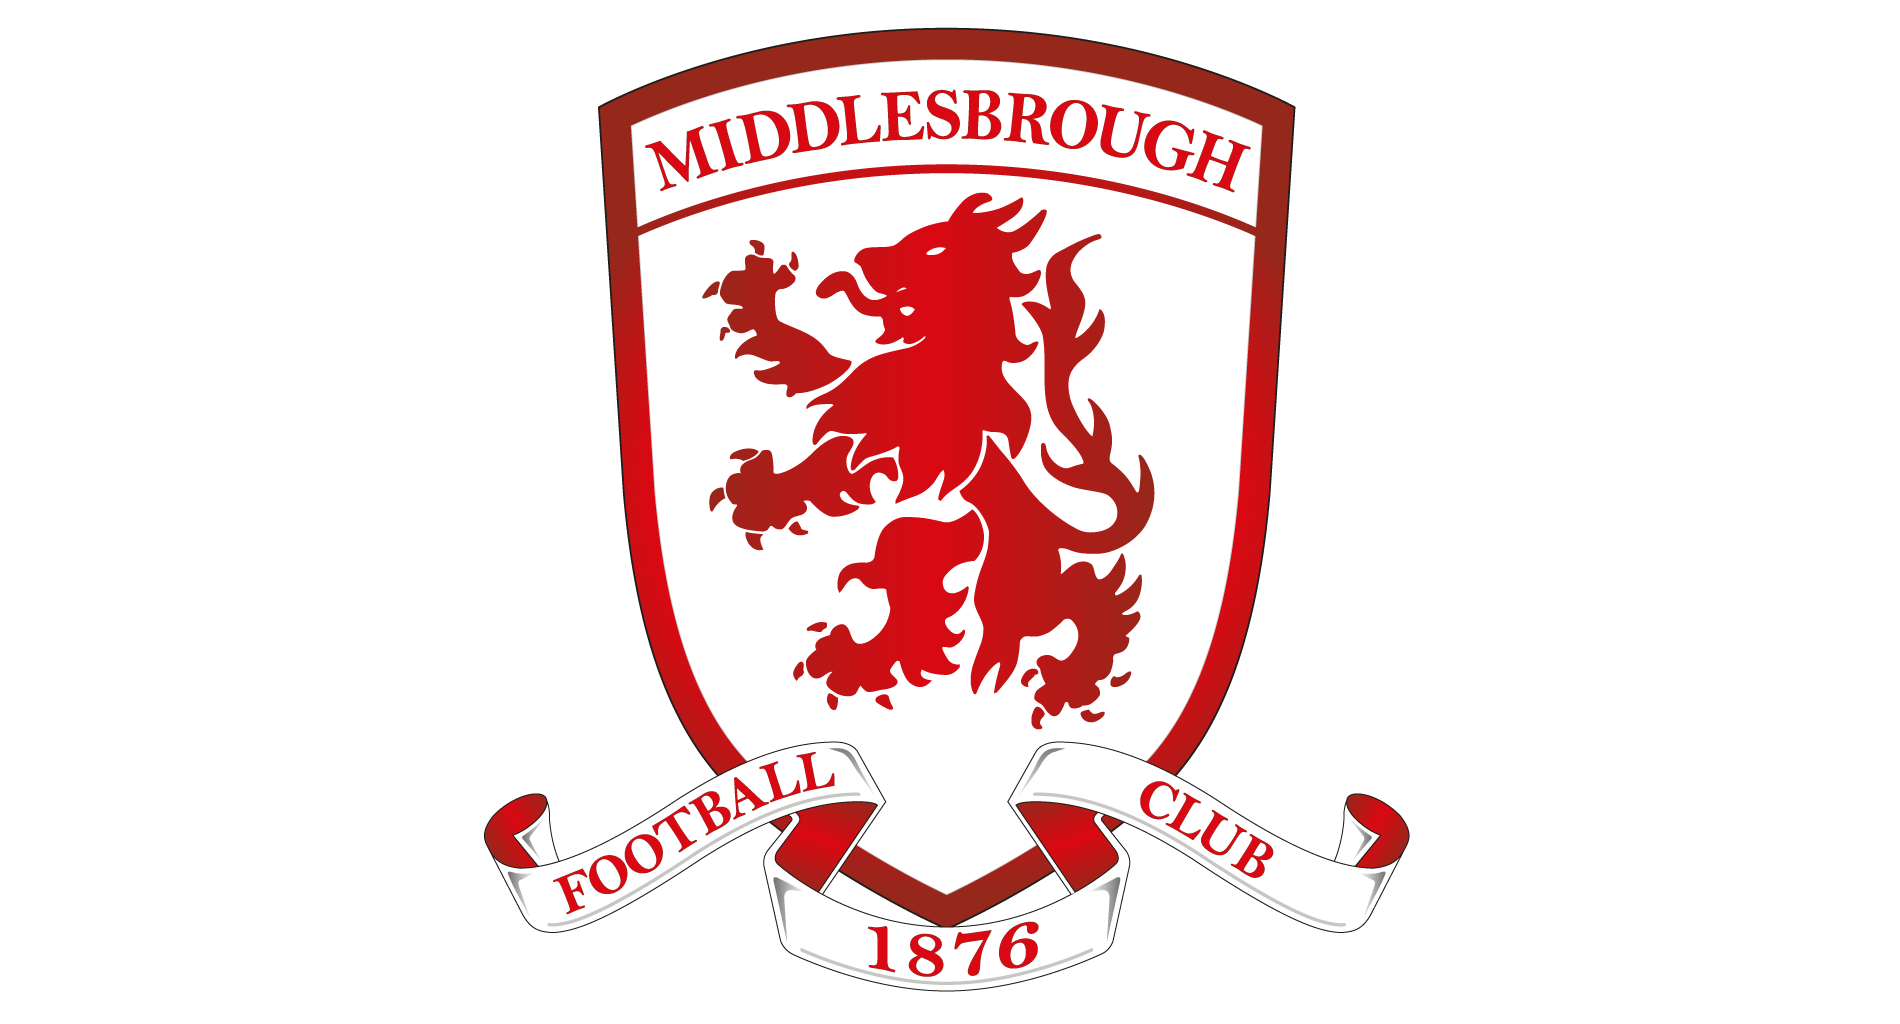 https://www.hub-soccer.com/wp-content/uploads/2021/11/Middlesbrough_FC_Crest-wide.png